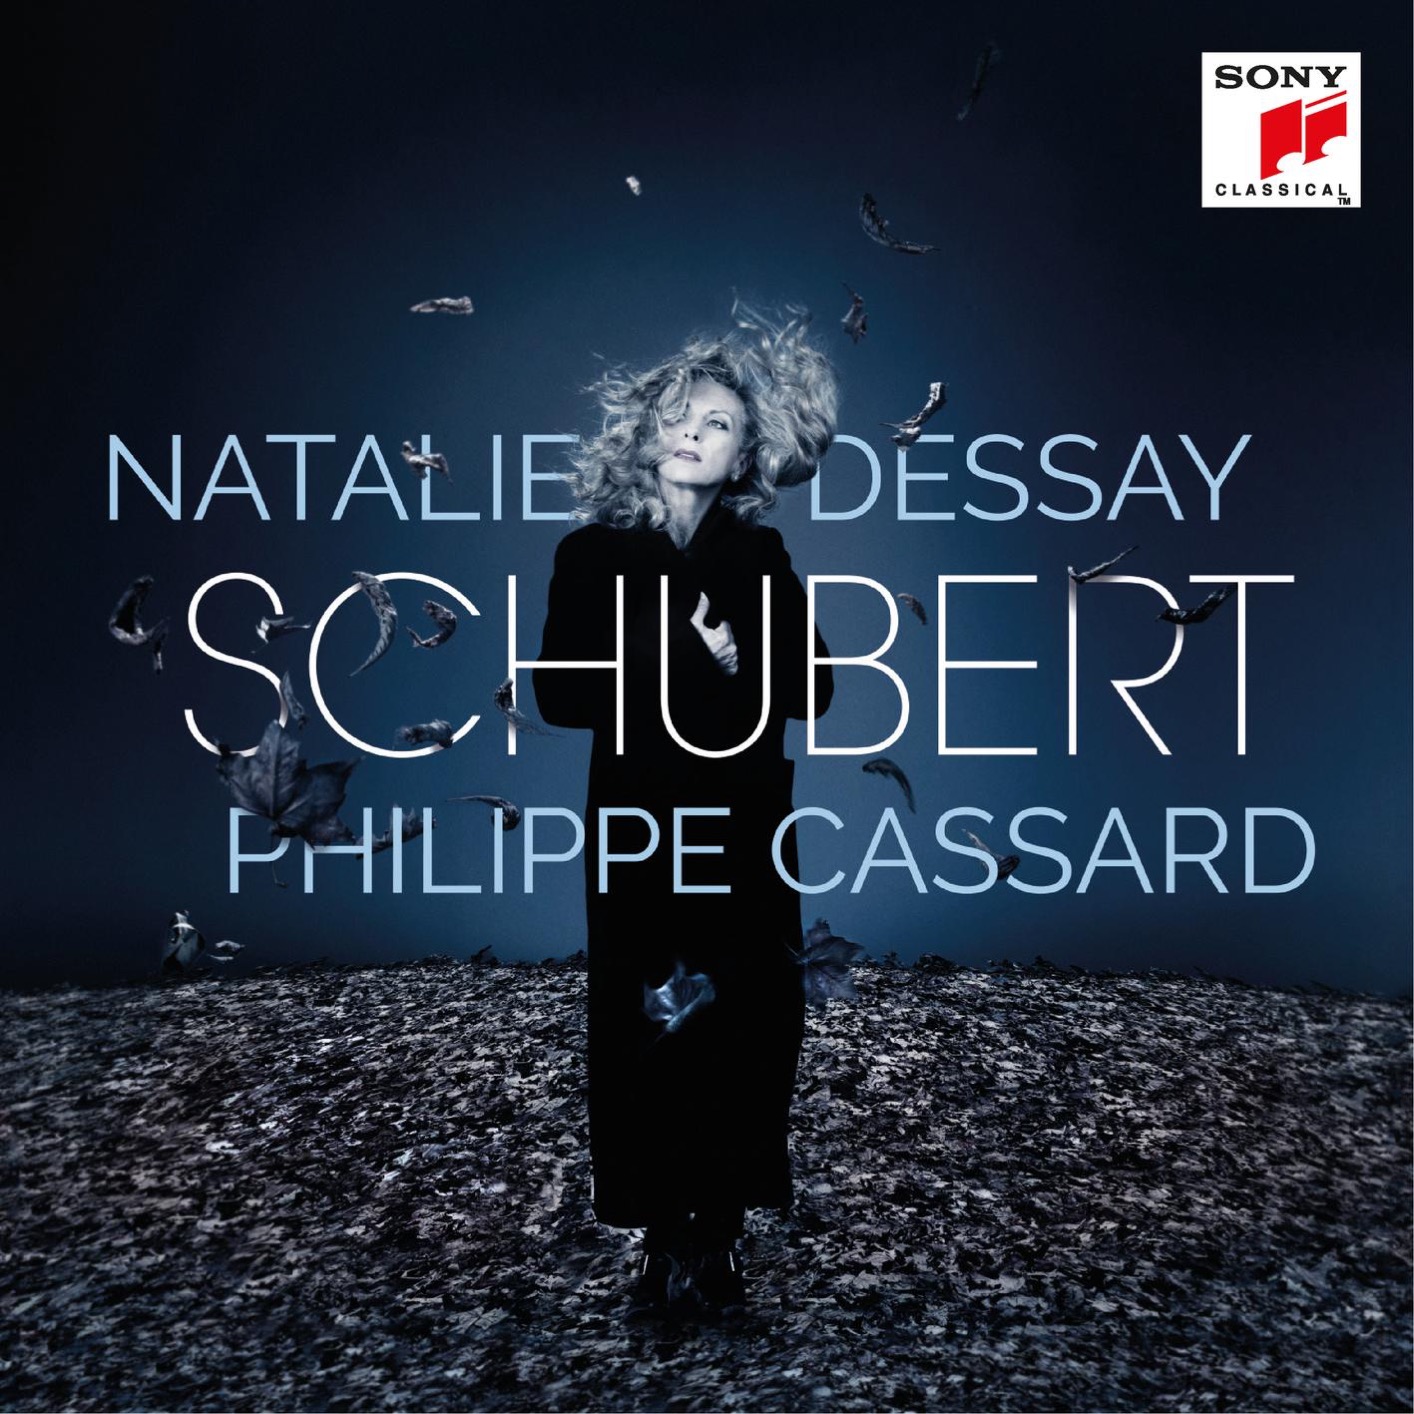 Natalie Dessay, Philippe Cassard - Schubert (2017) [PrestoClassical FLAC 24bit/96kHz]